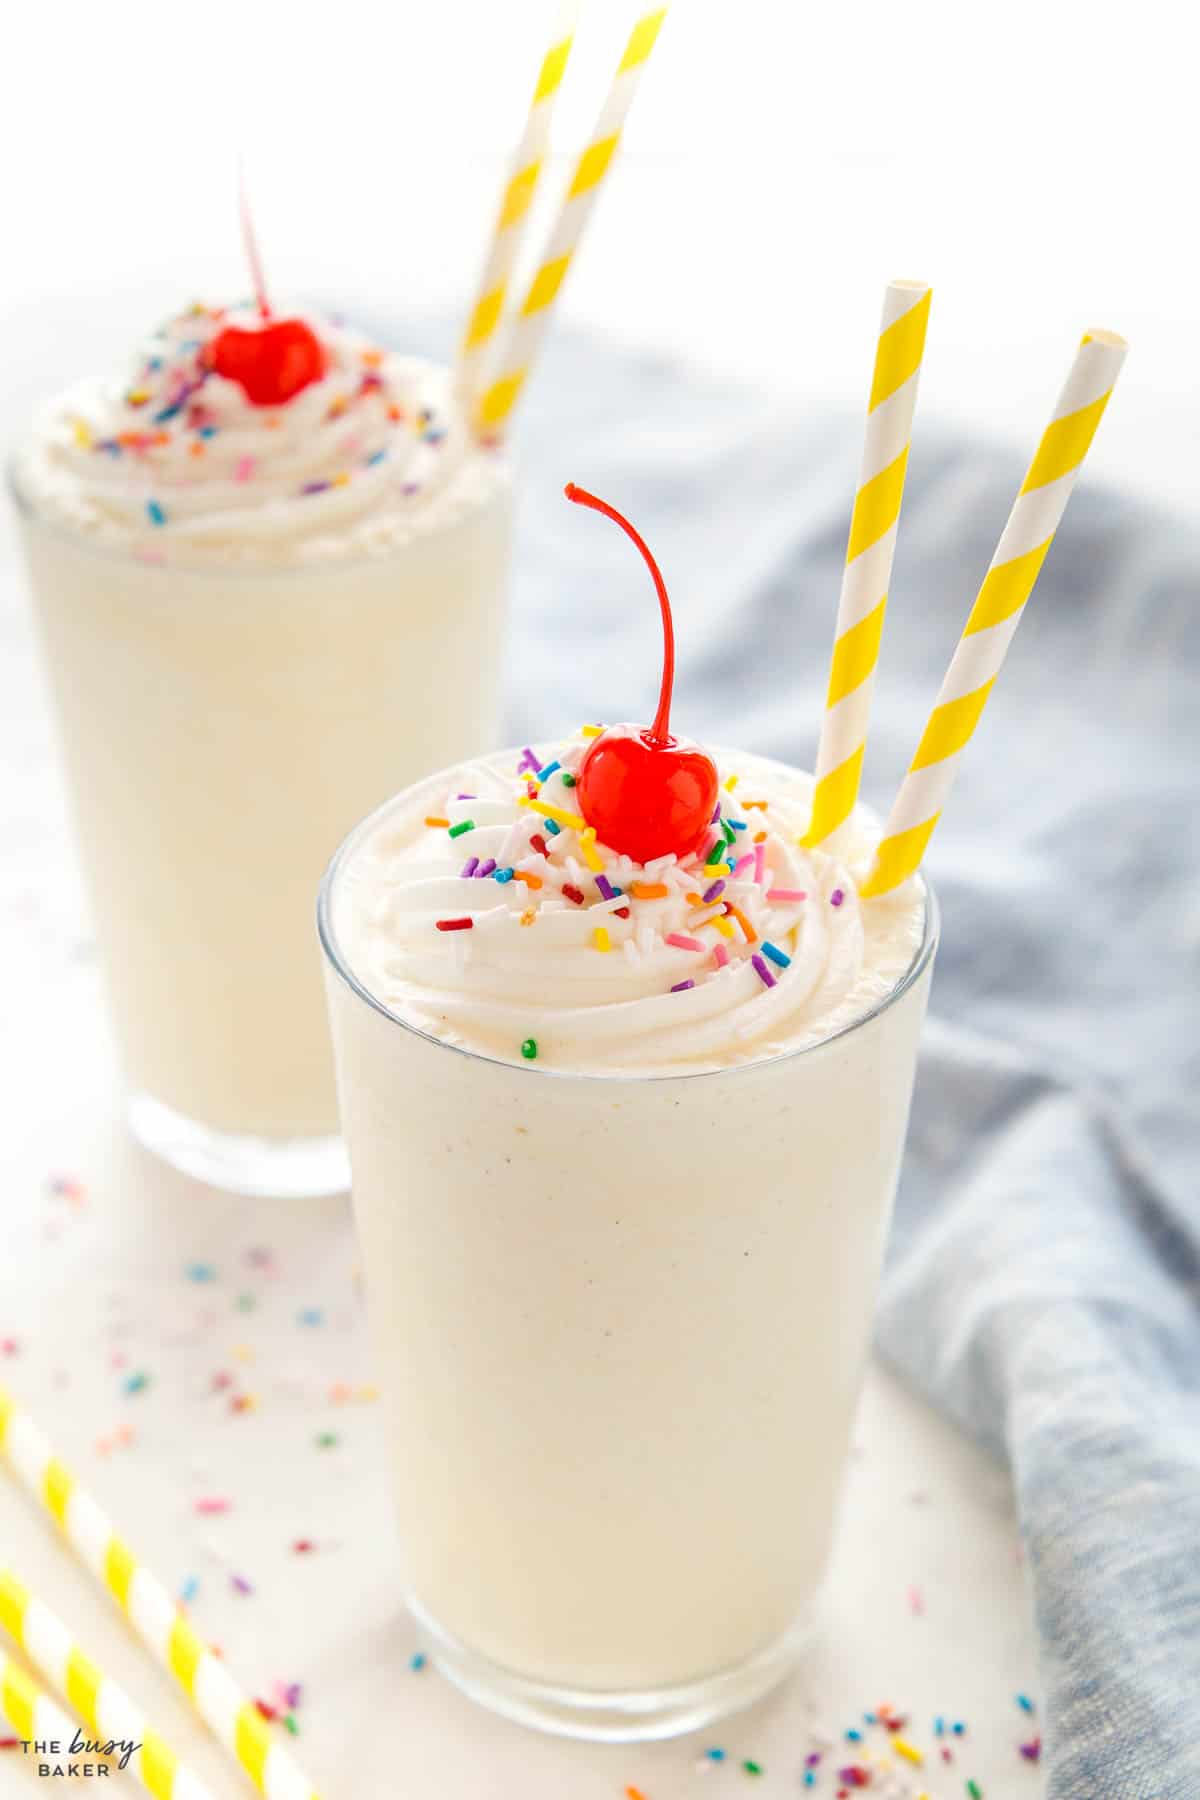 vanilla milkshake